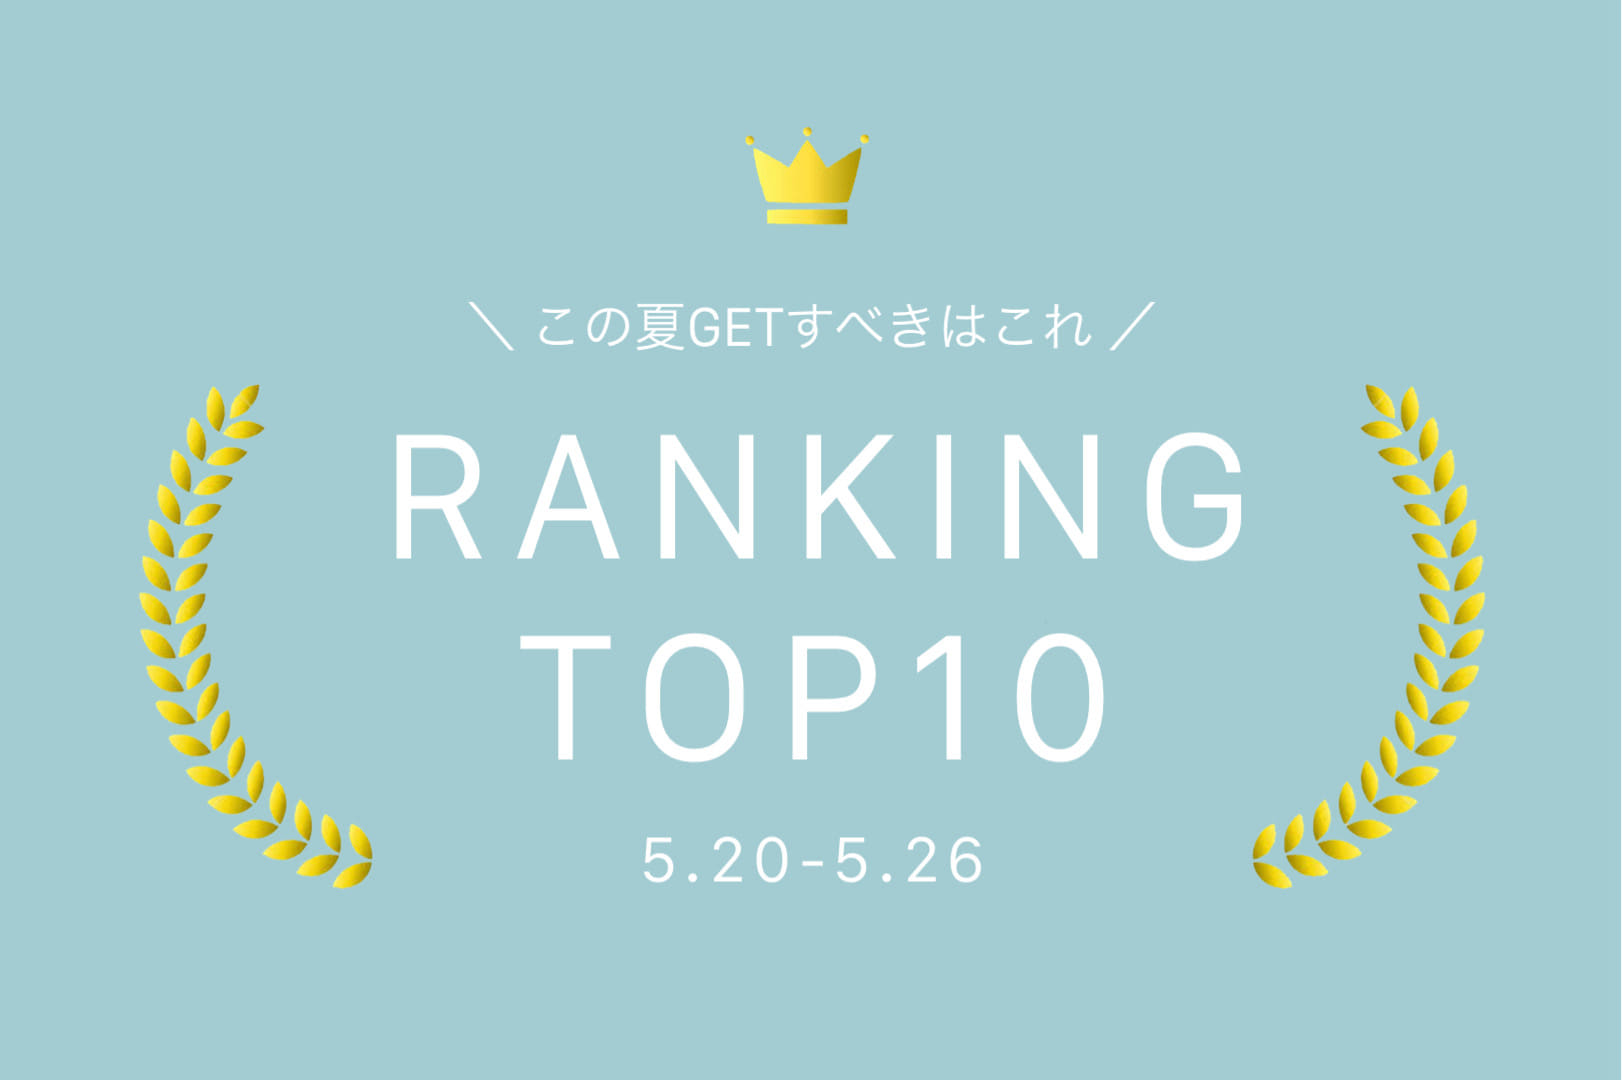 Kastane 【5.20-5.26】WEEKLY RANKING TOP10